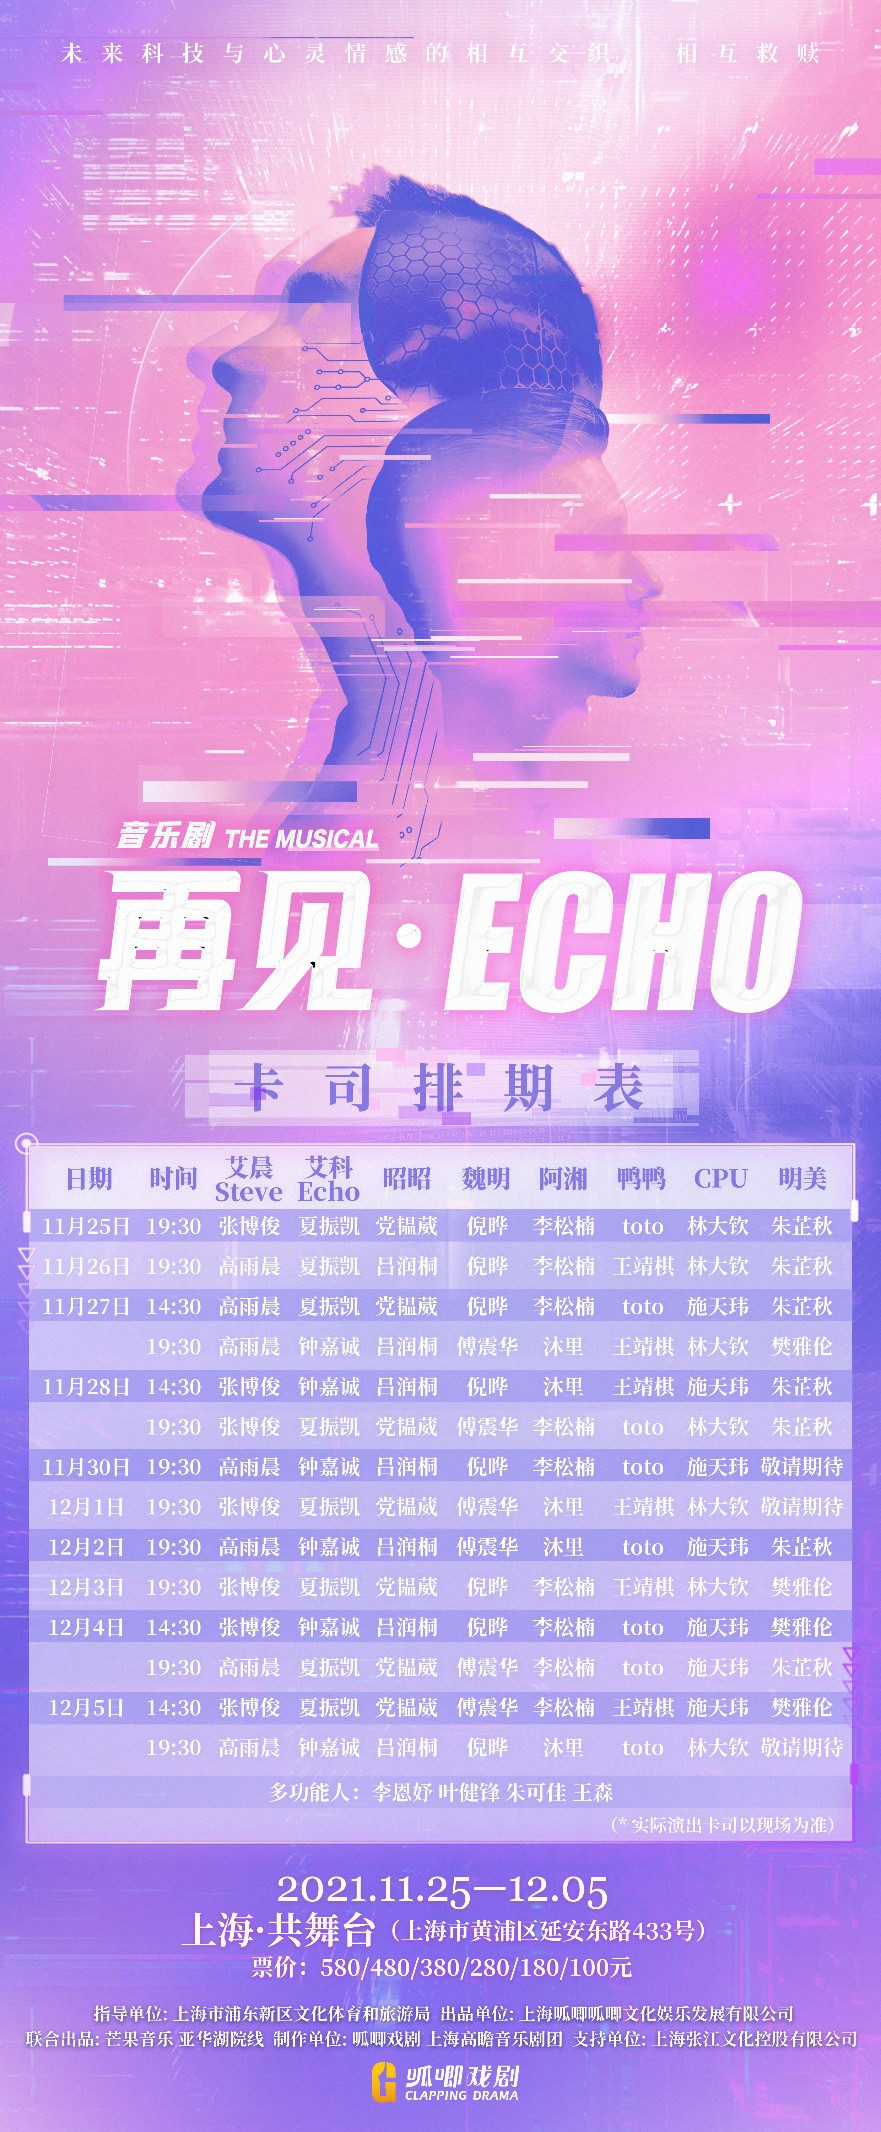 2021音乐剧《再见Echo》上海站时间、门票、剧情介绍